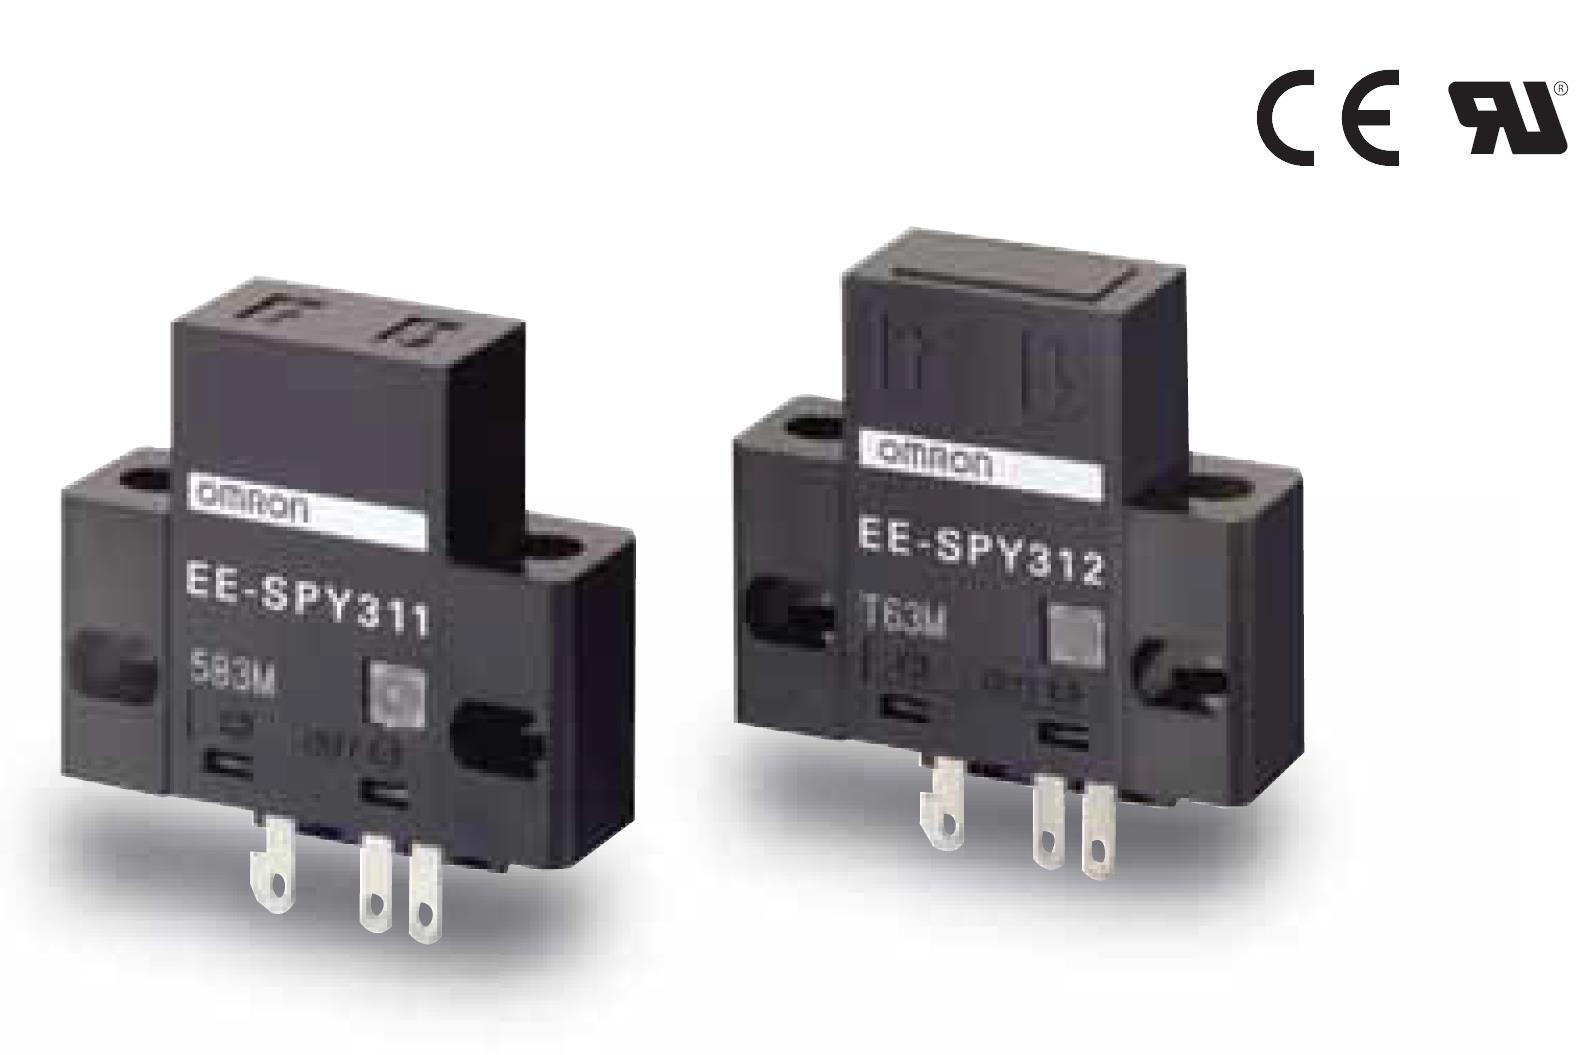 追加有助于降低配线工时的棒状端子对应品
欧姆龙EE-SPY312